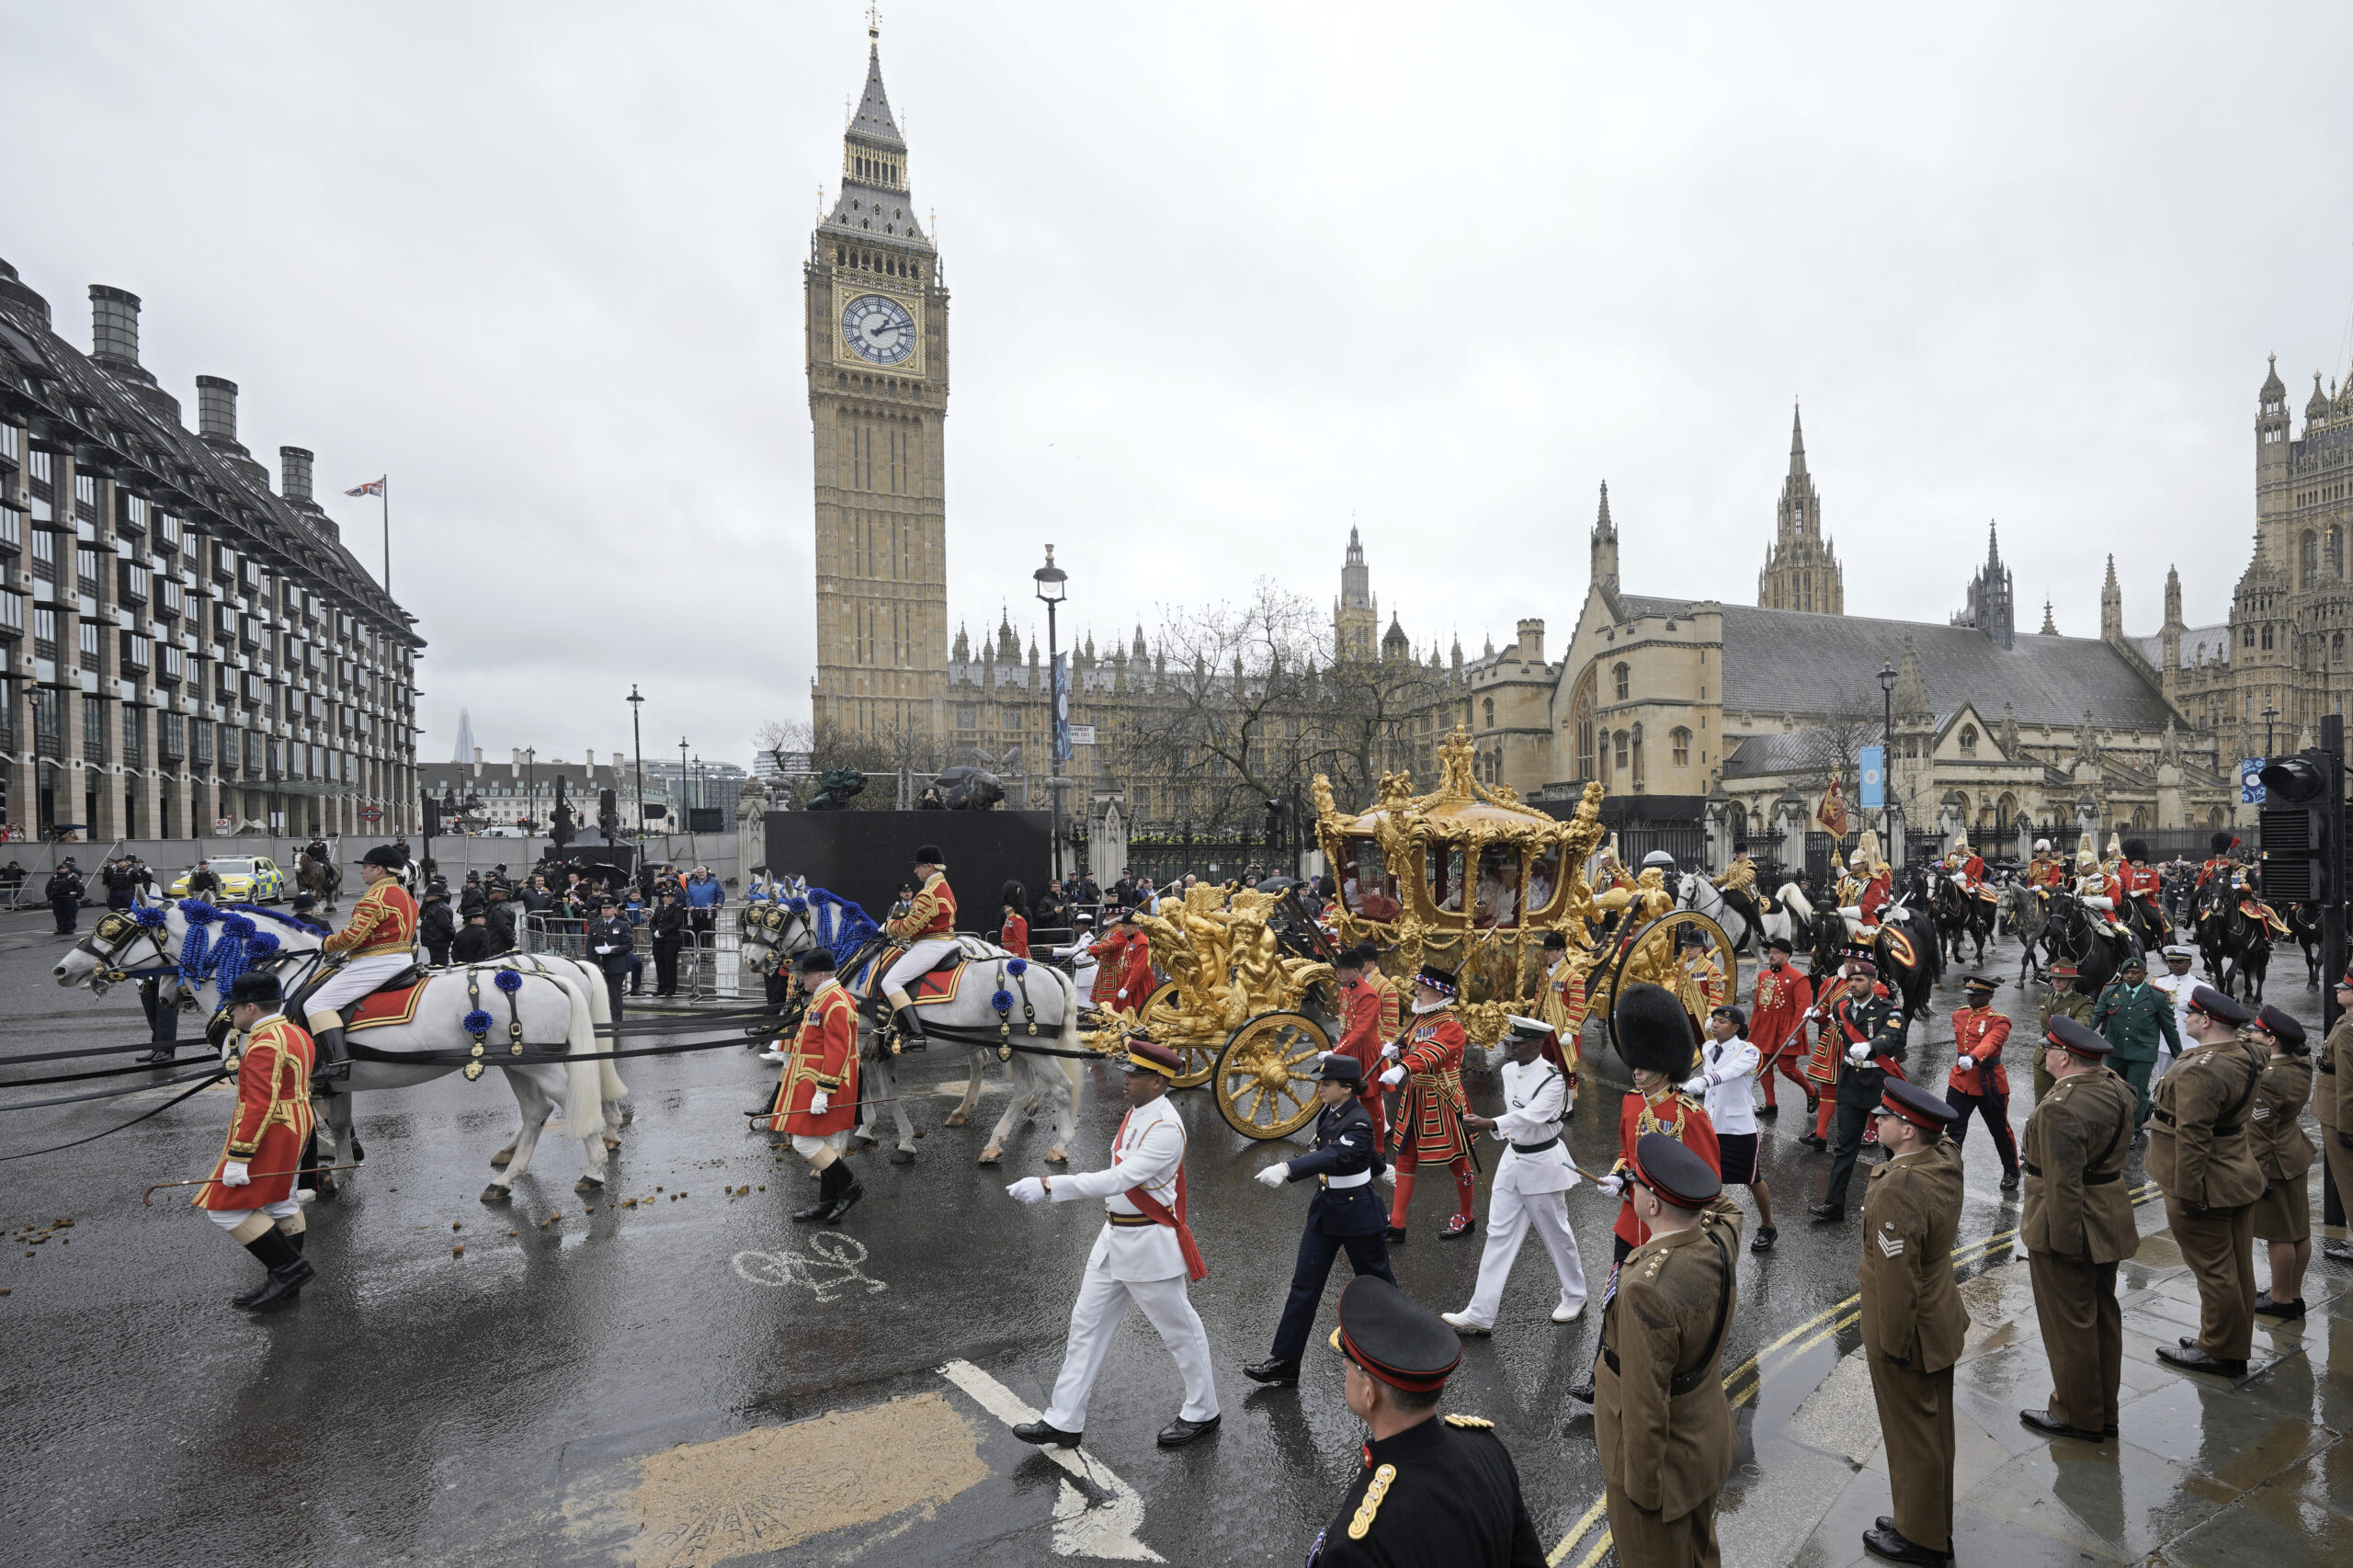 Στέψη Καρόλου: Χιλιάδες κόσμου στο Λονδίνο, διαδηλώσεις και συλλήψεις αντιβασιλικών, παραλειπόμενα